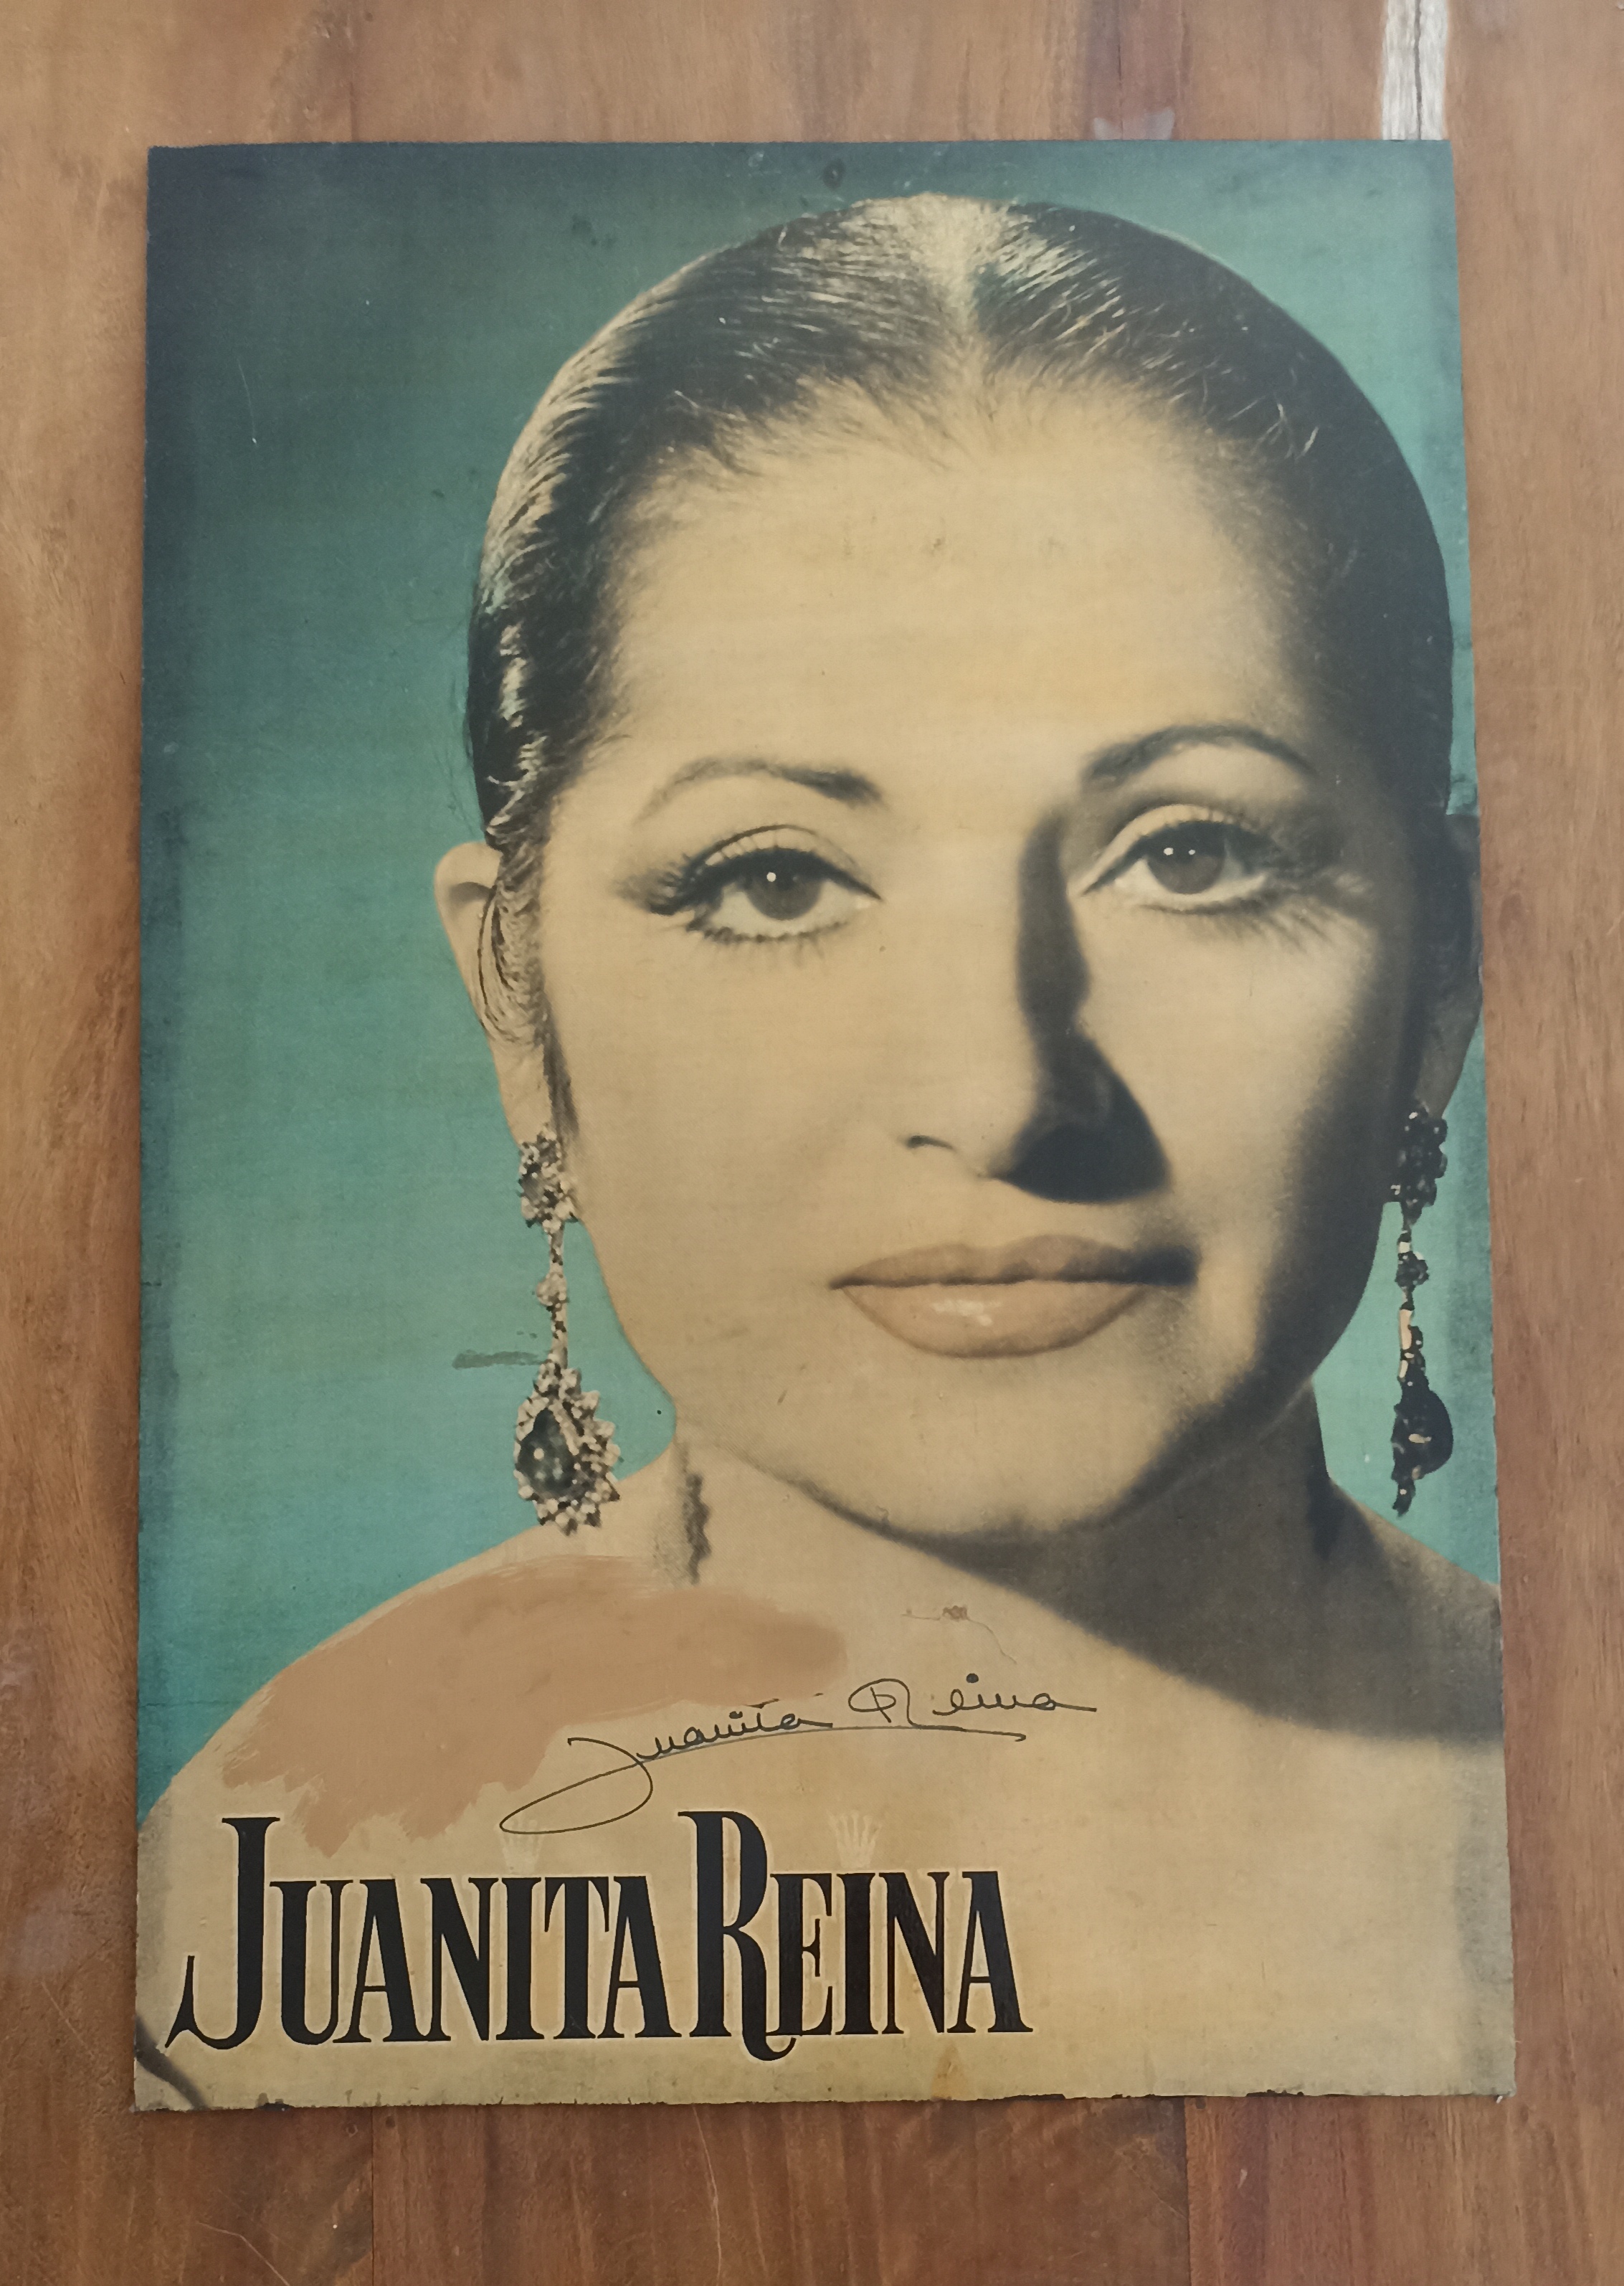 Juanita Reina. Cartel pegado en tabla (100x70 cm.) Dedicatoria borrada en parte por lo que solo se aprecia la firma